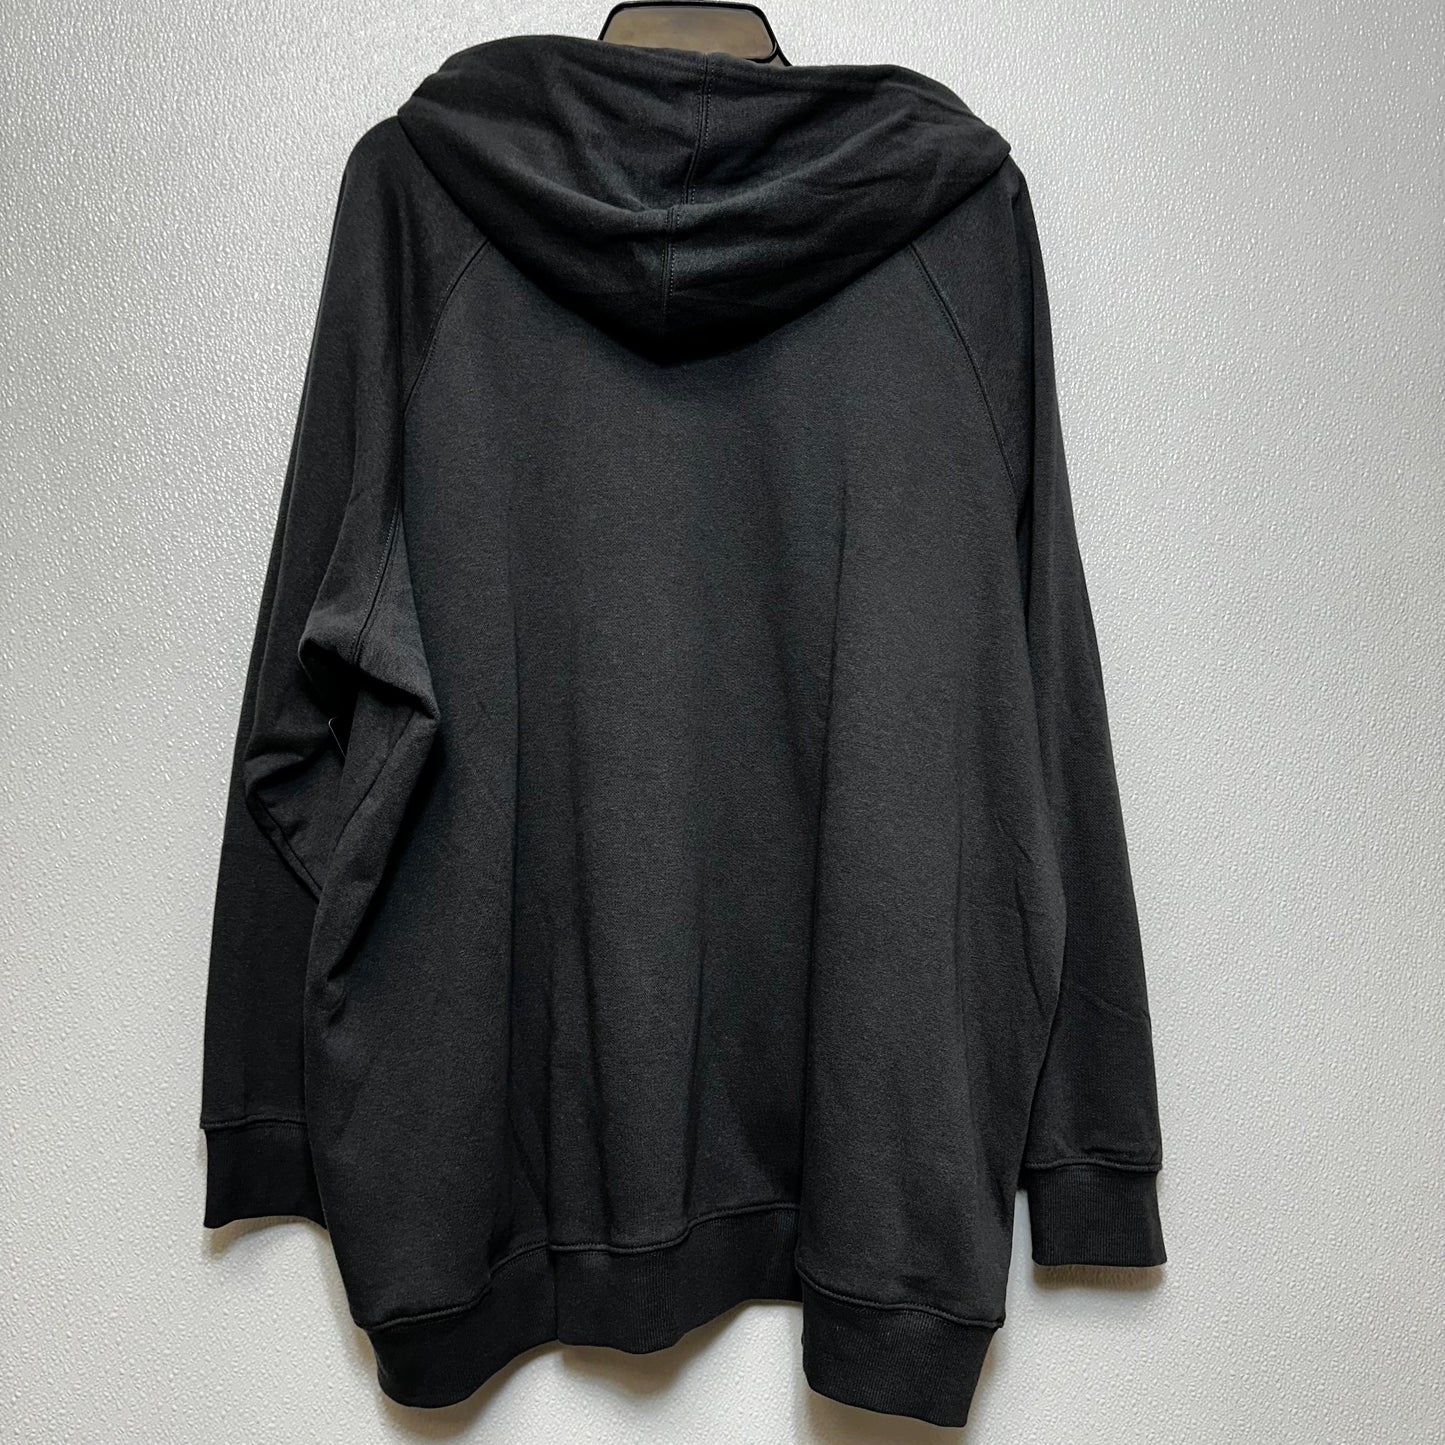 Sweatshirt Hoodie By Torrid  Size: 4x